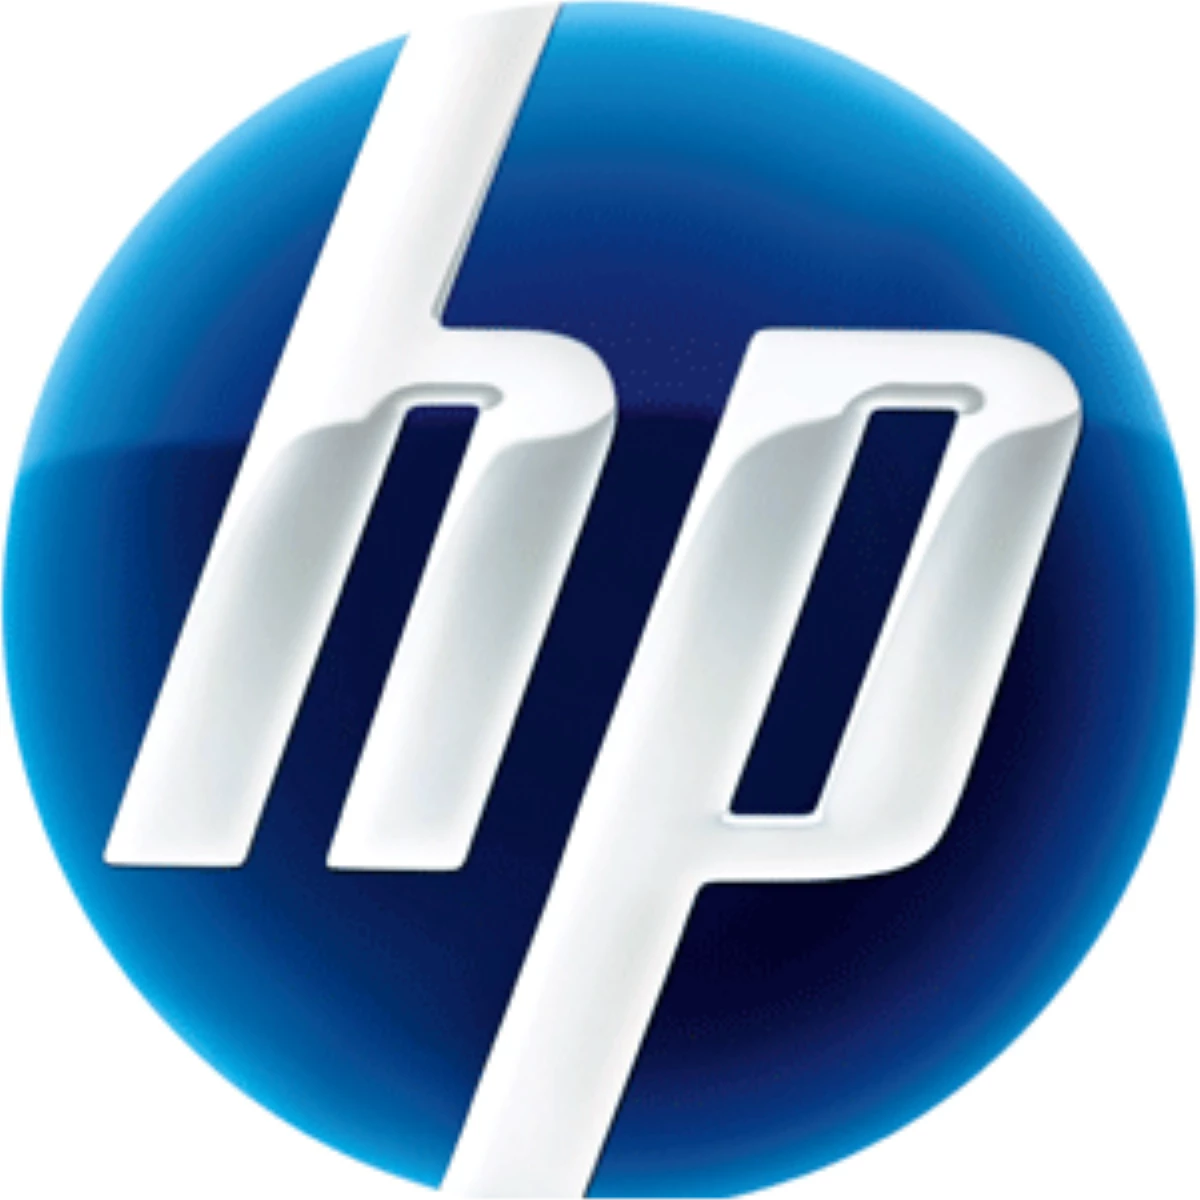 HP, Satış Sonrası Hizmetlere Yatırım Yaparak Fark Yaratıyor